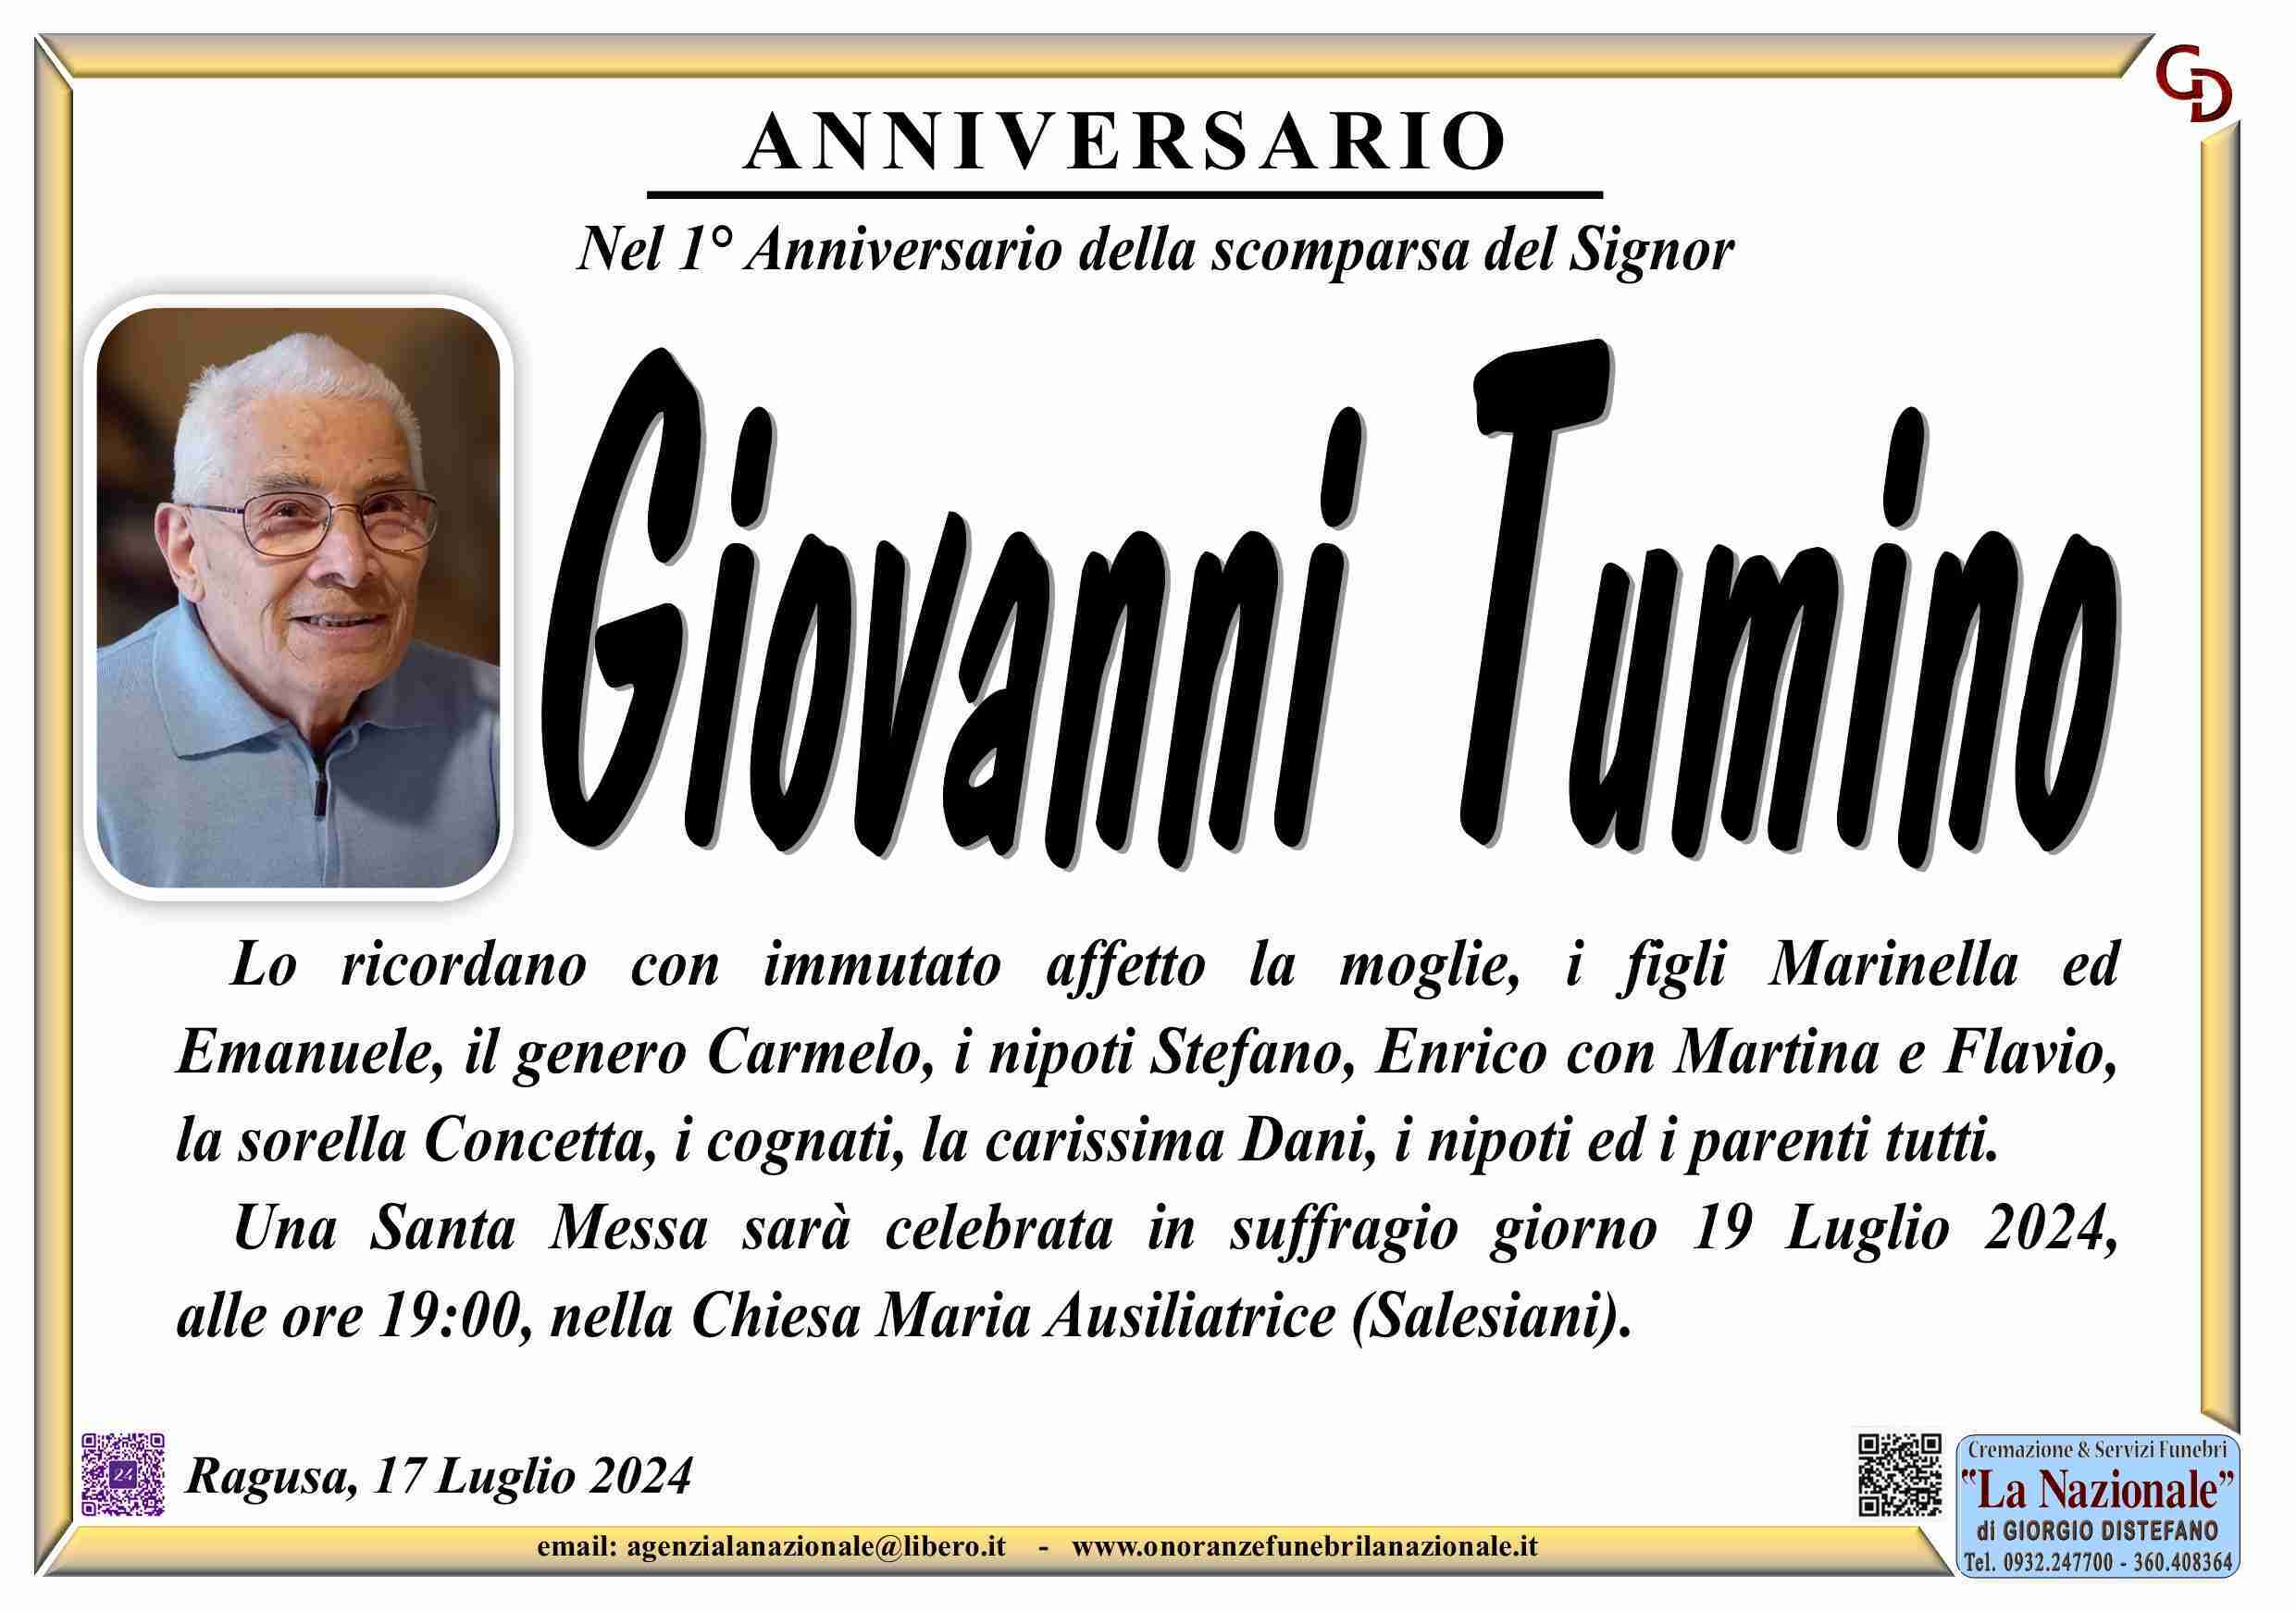 Giovanni Tumino